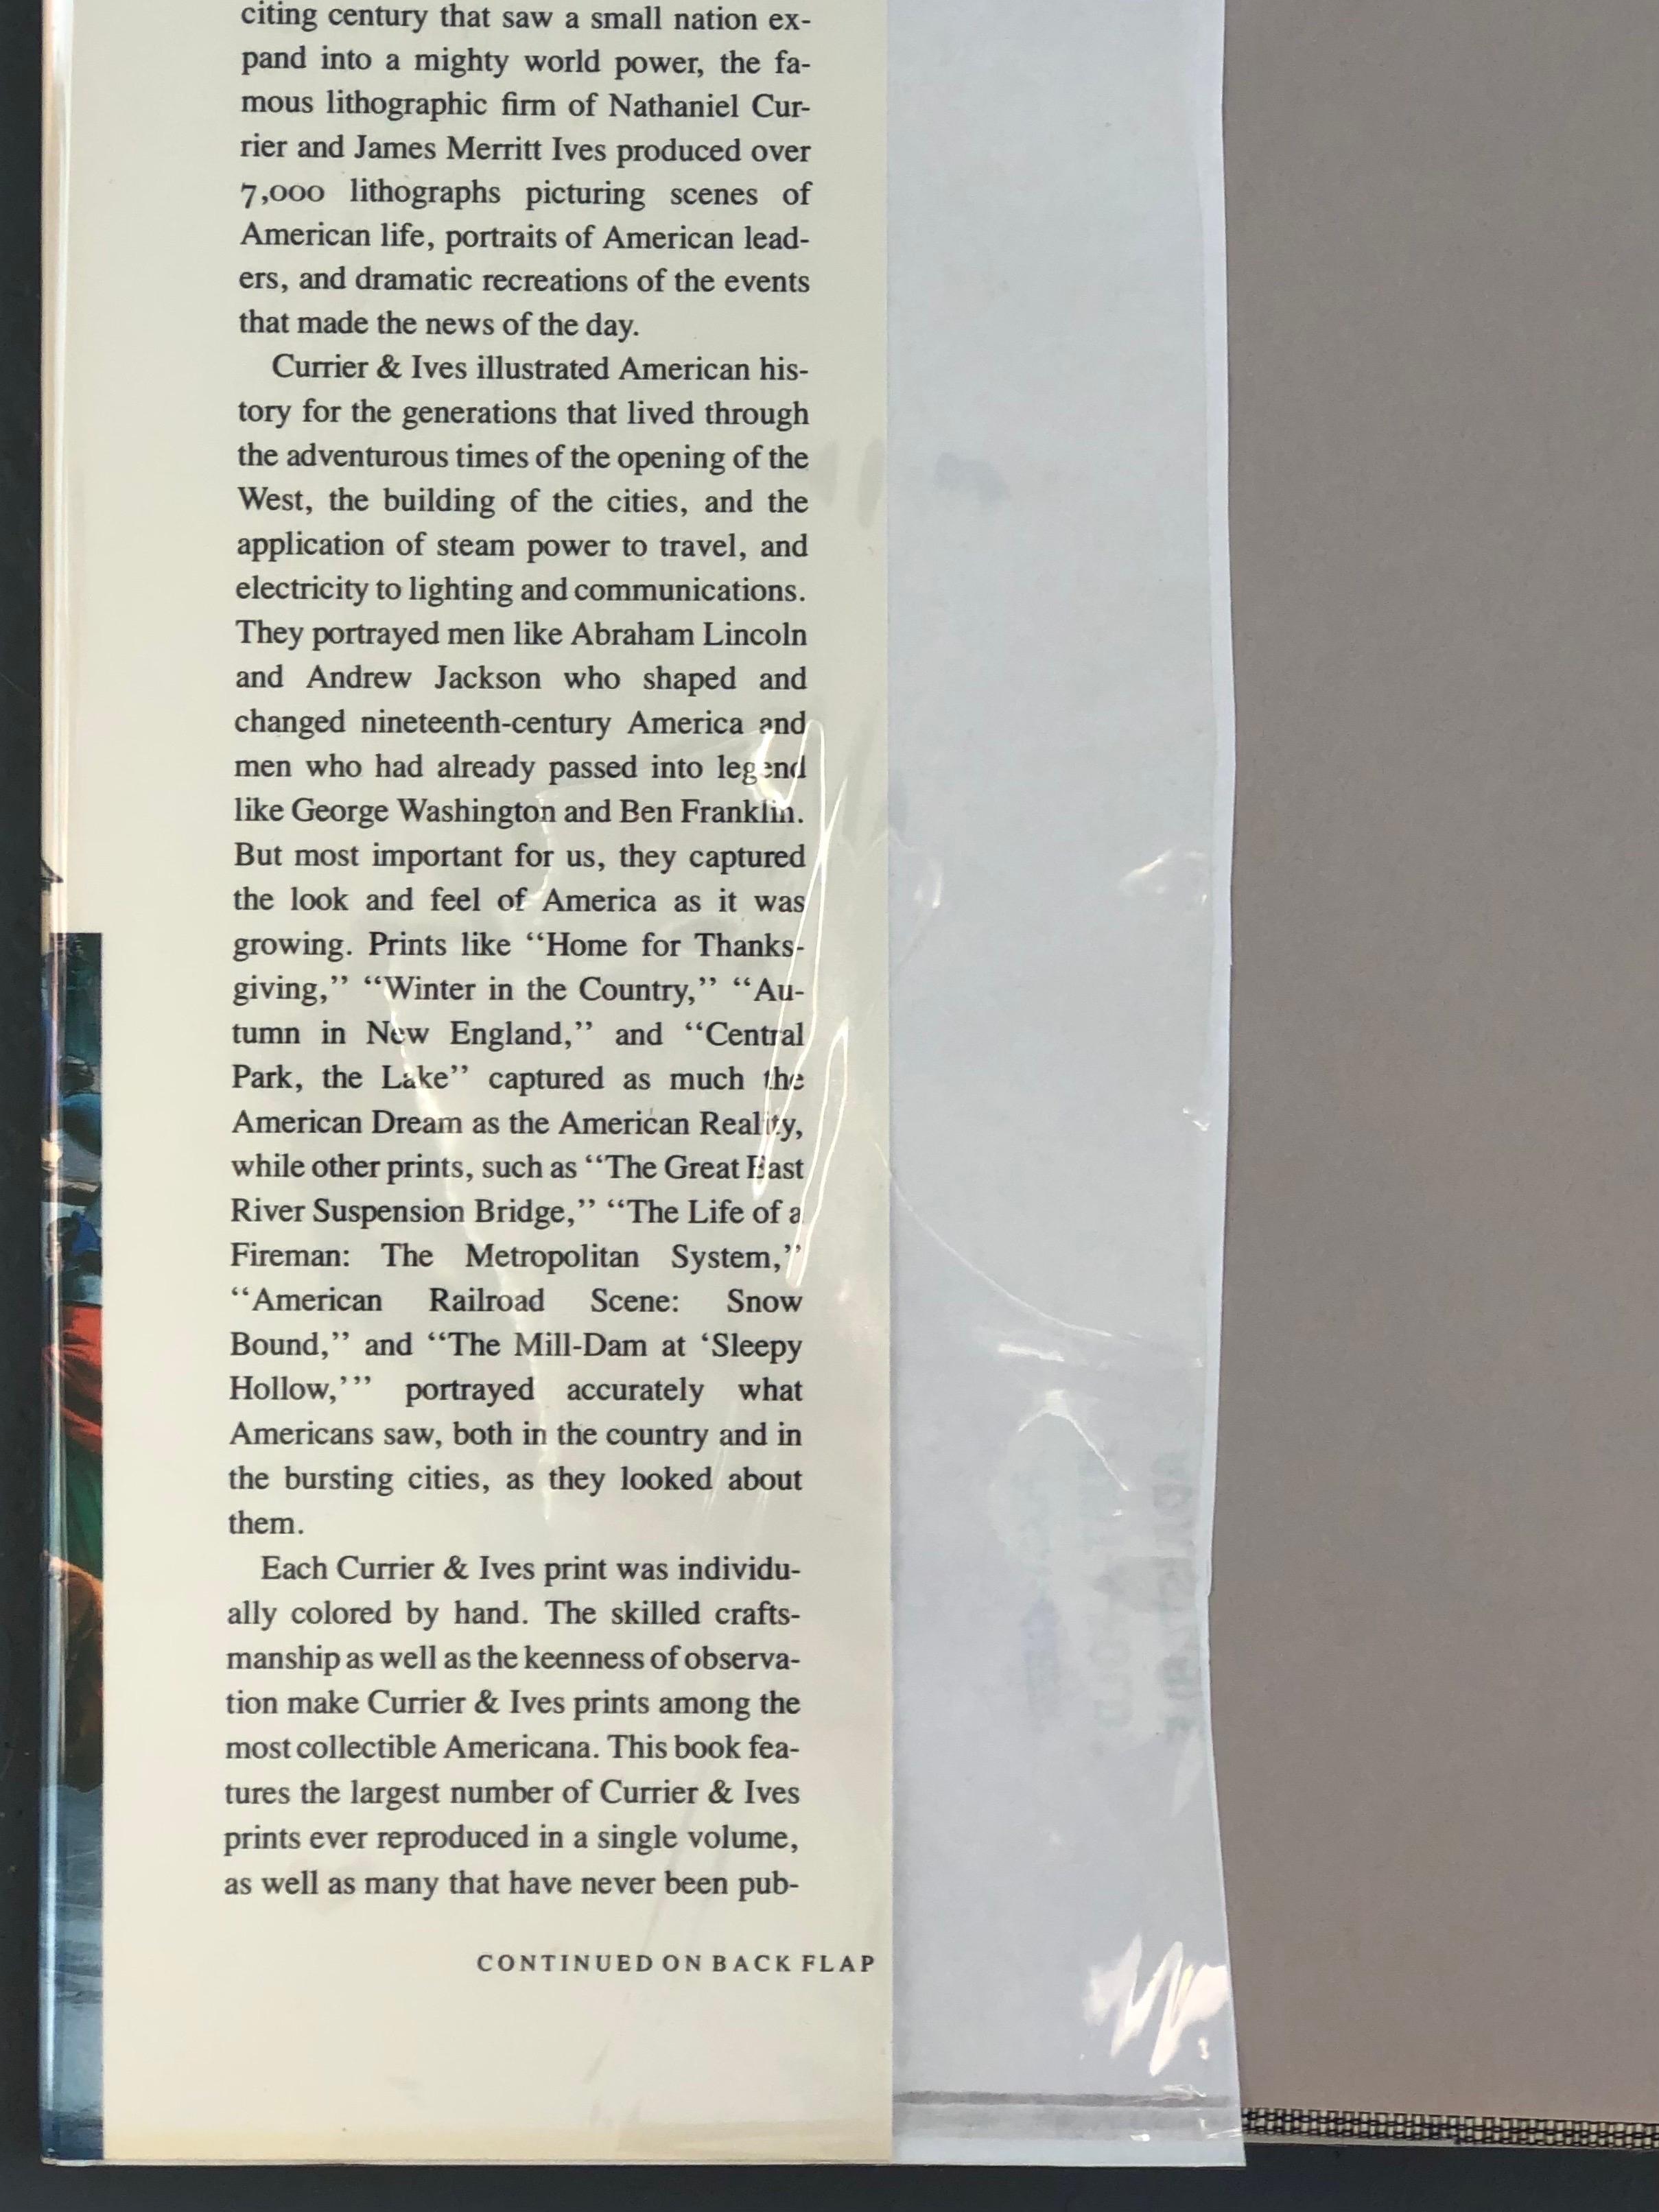 Le grand livre de l'Amérique de Currier & Ives par Walton Rawlings. Un énorme livre à couverture rigide avec jaquette. Première édition, publiée en 1979 par Abbeville Press of New York. Imprimé et relié au Japon. 487 pages.
